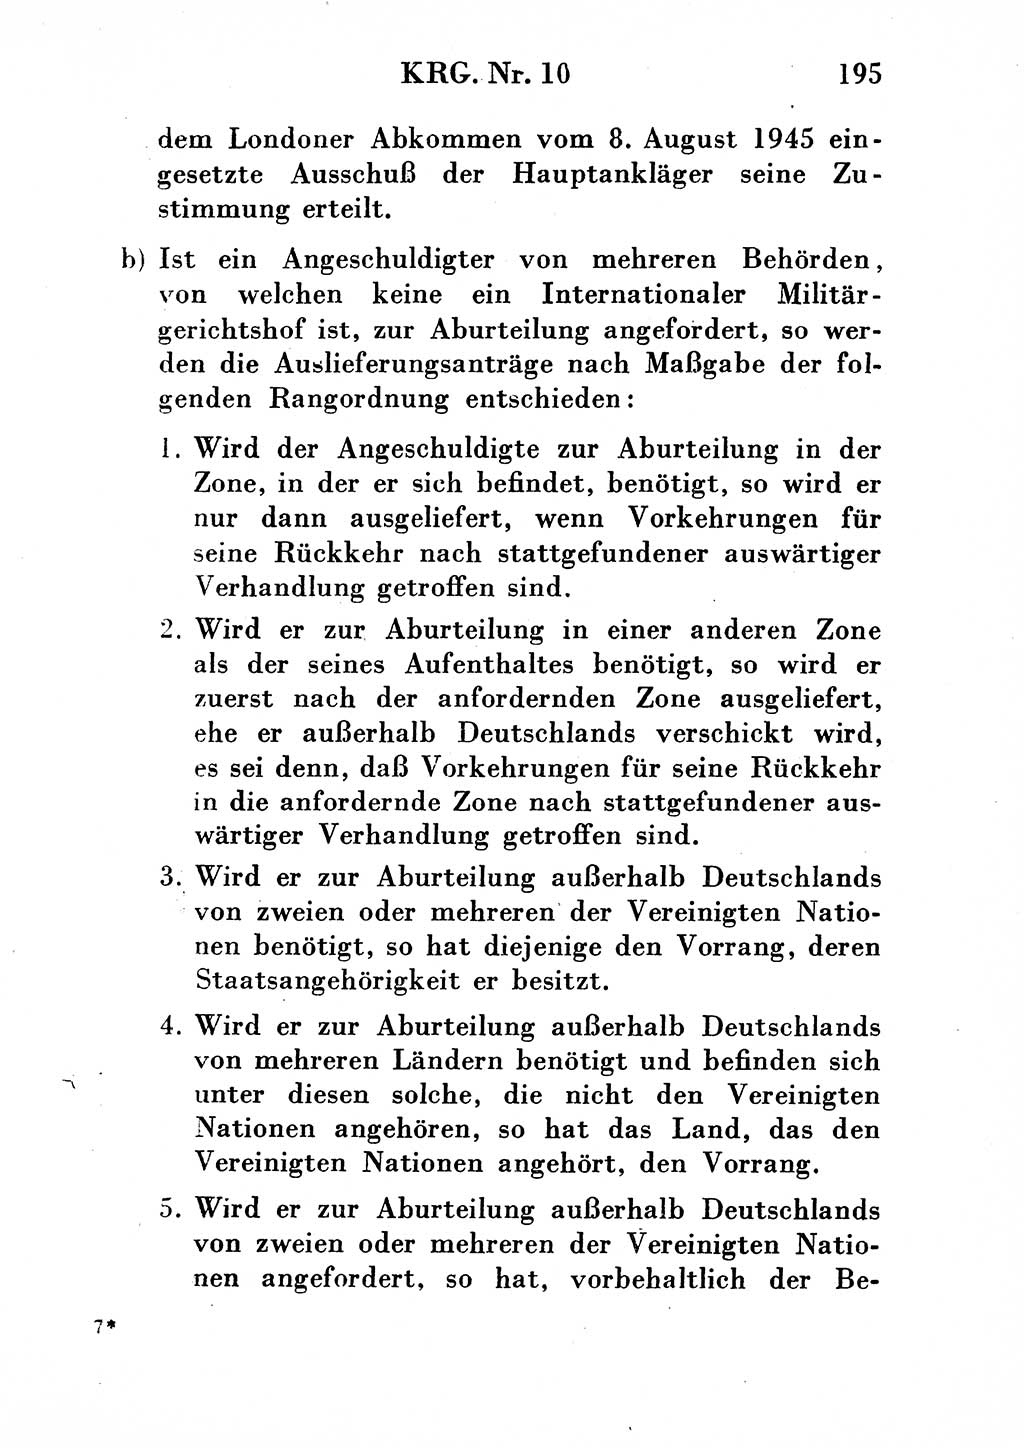 Strafgesetzbuch (StGB) und andere Strafgesetze [Deutsche Demokratische Republik (DDR)] 1954, Seite 195 (StGB Strafges. DDR 1954, S. 195)